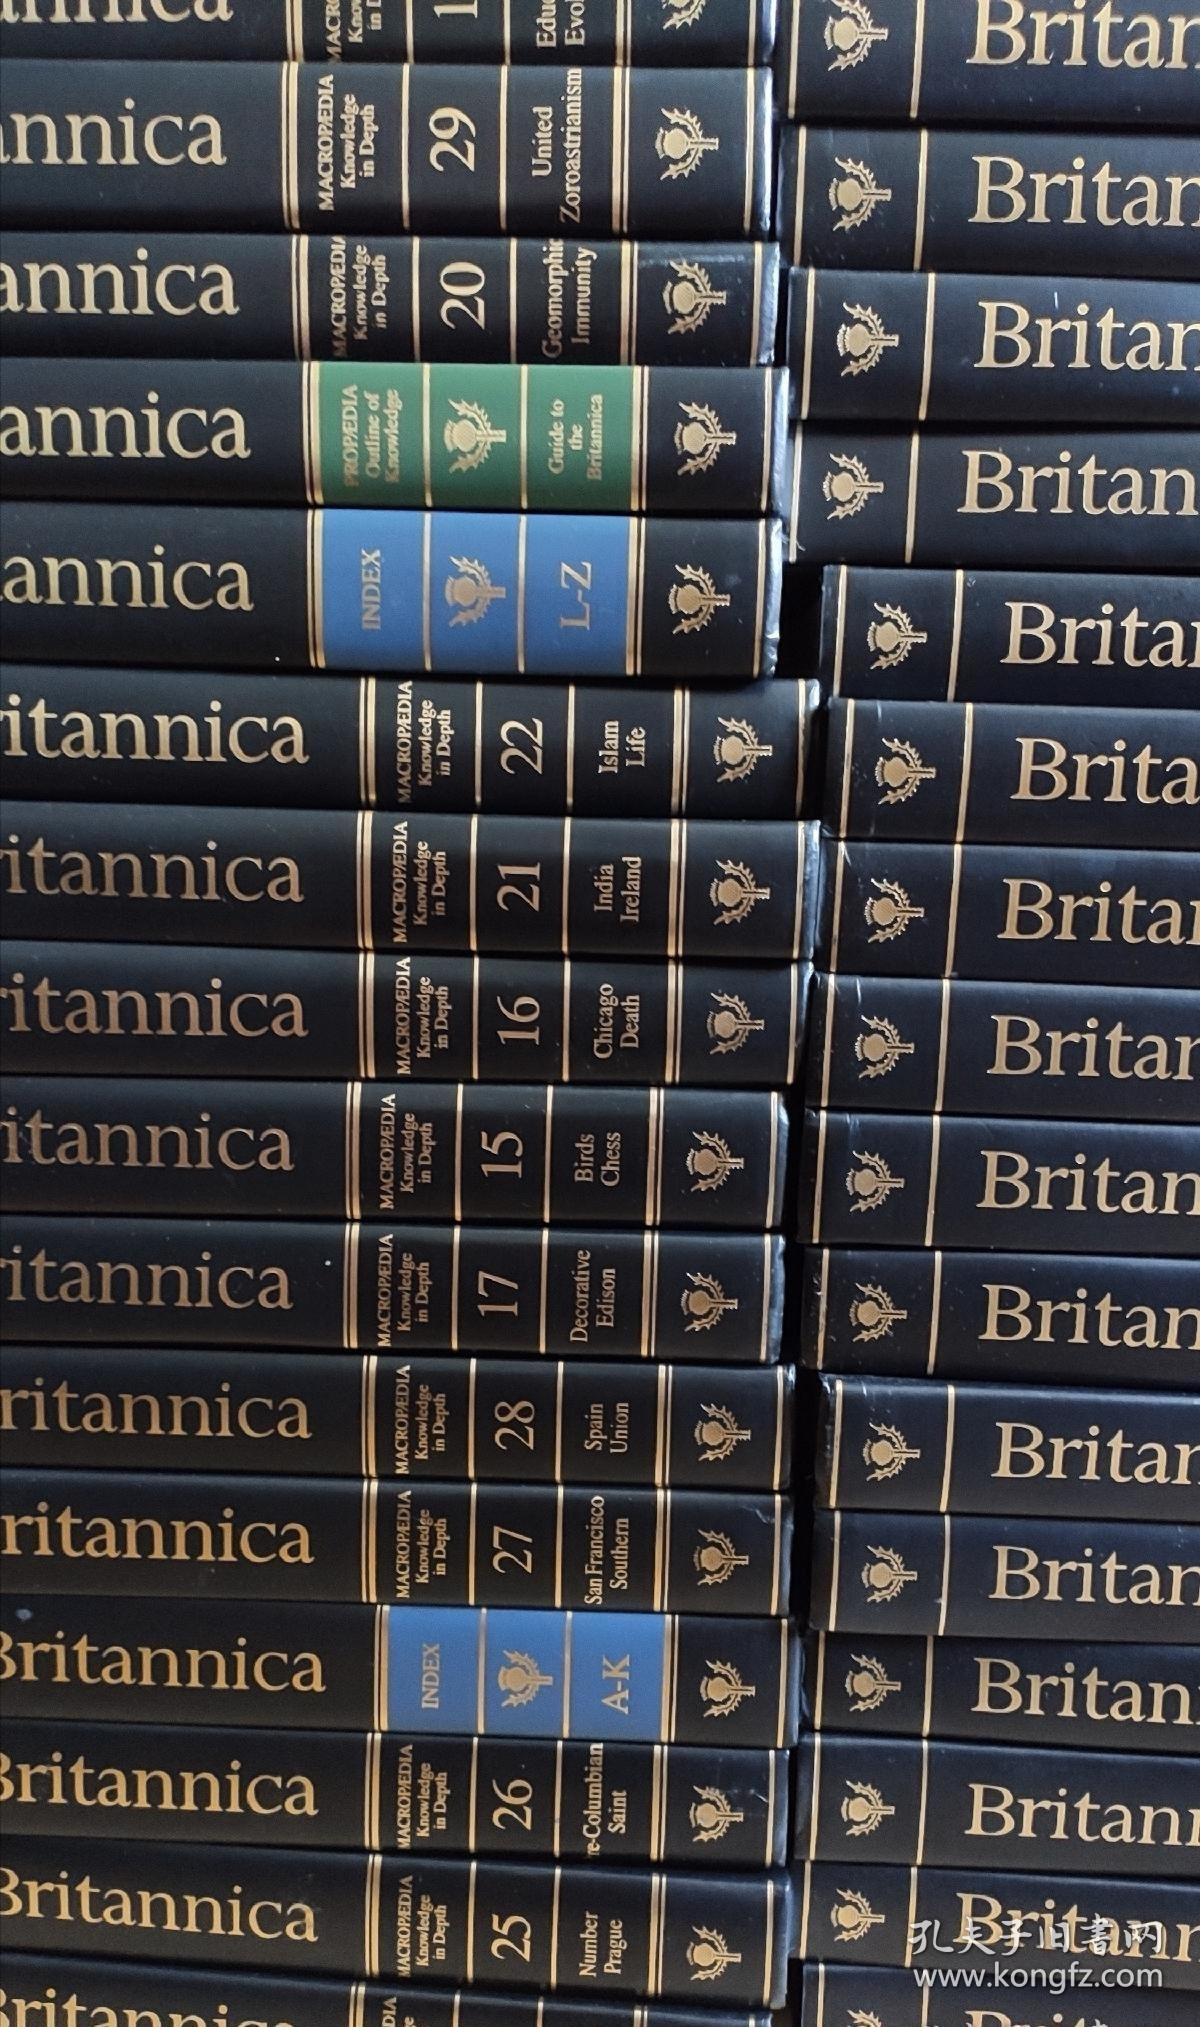 大英百科全书 Encyclopaedia Britannica 32册全套 1992年皮面收藏版竹节书脊书顶刷金限量编号